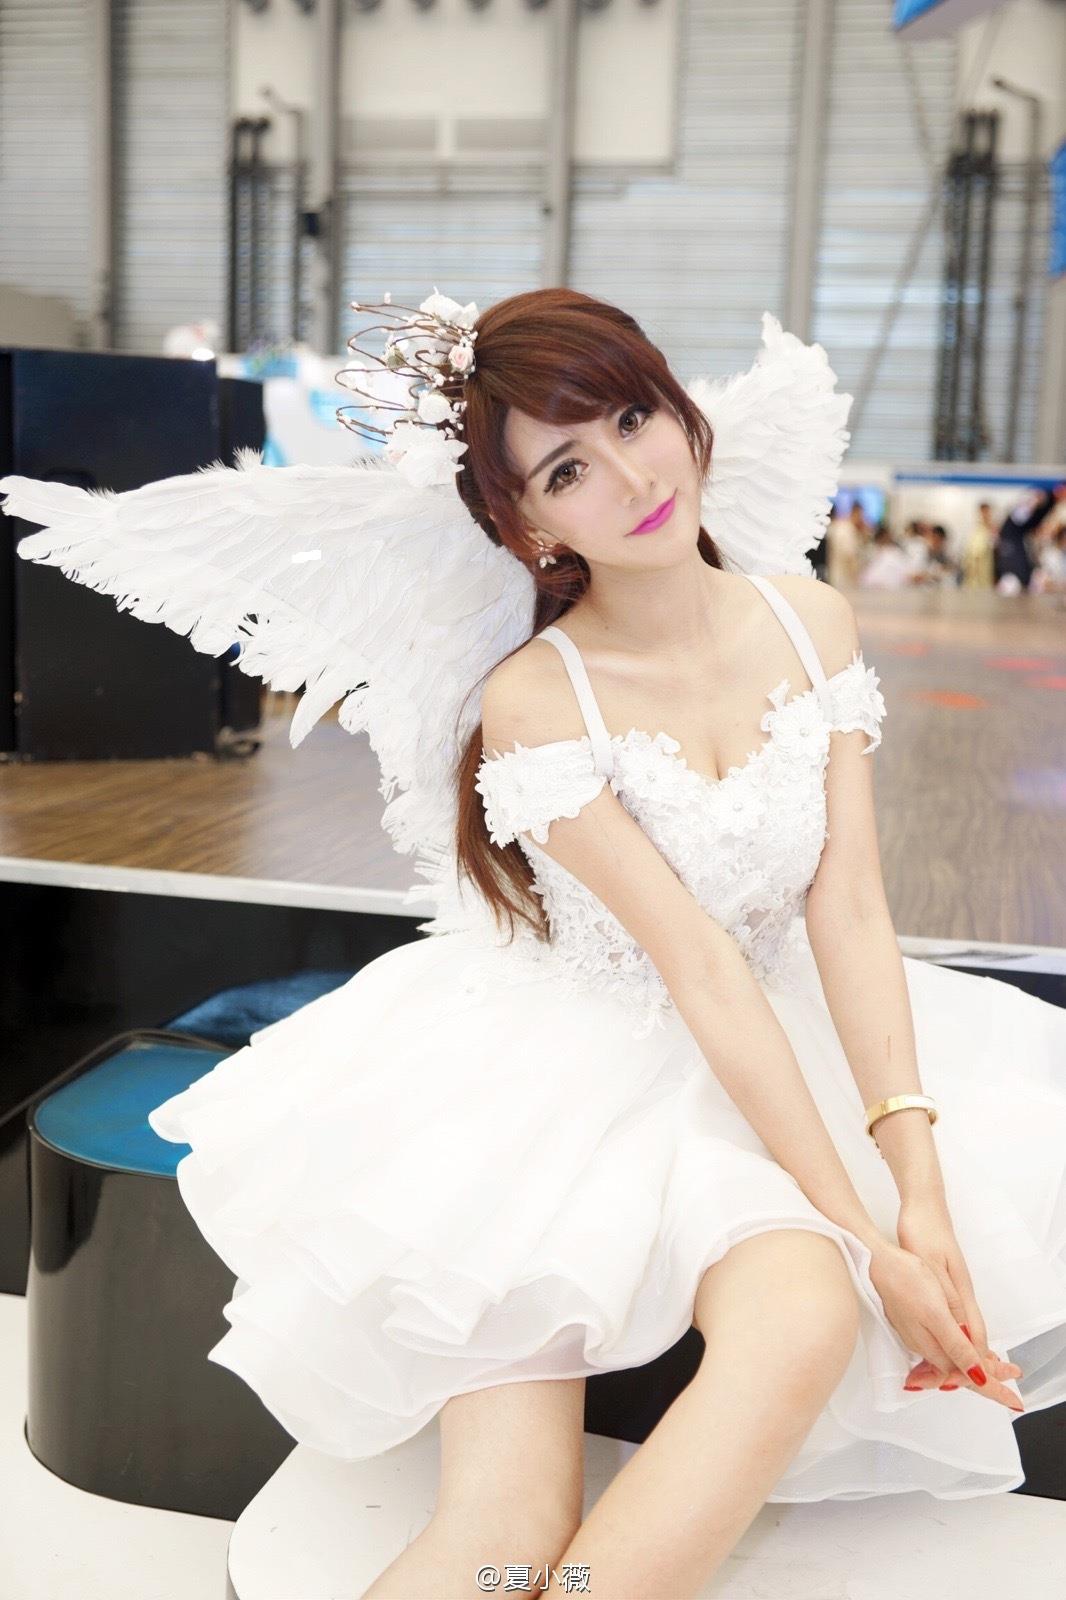 游戏展美女模特夏小薇天使之翼装,游戏展美女模特夏小薇天使之翼装